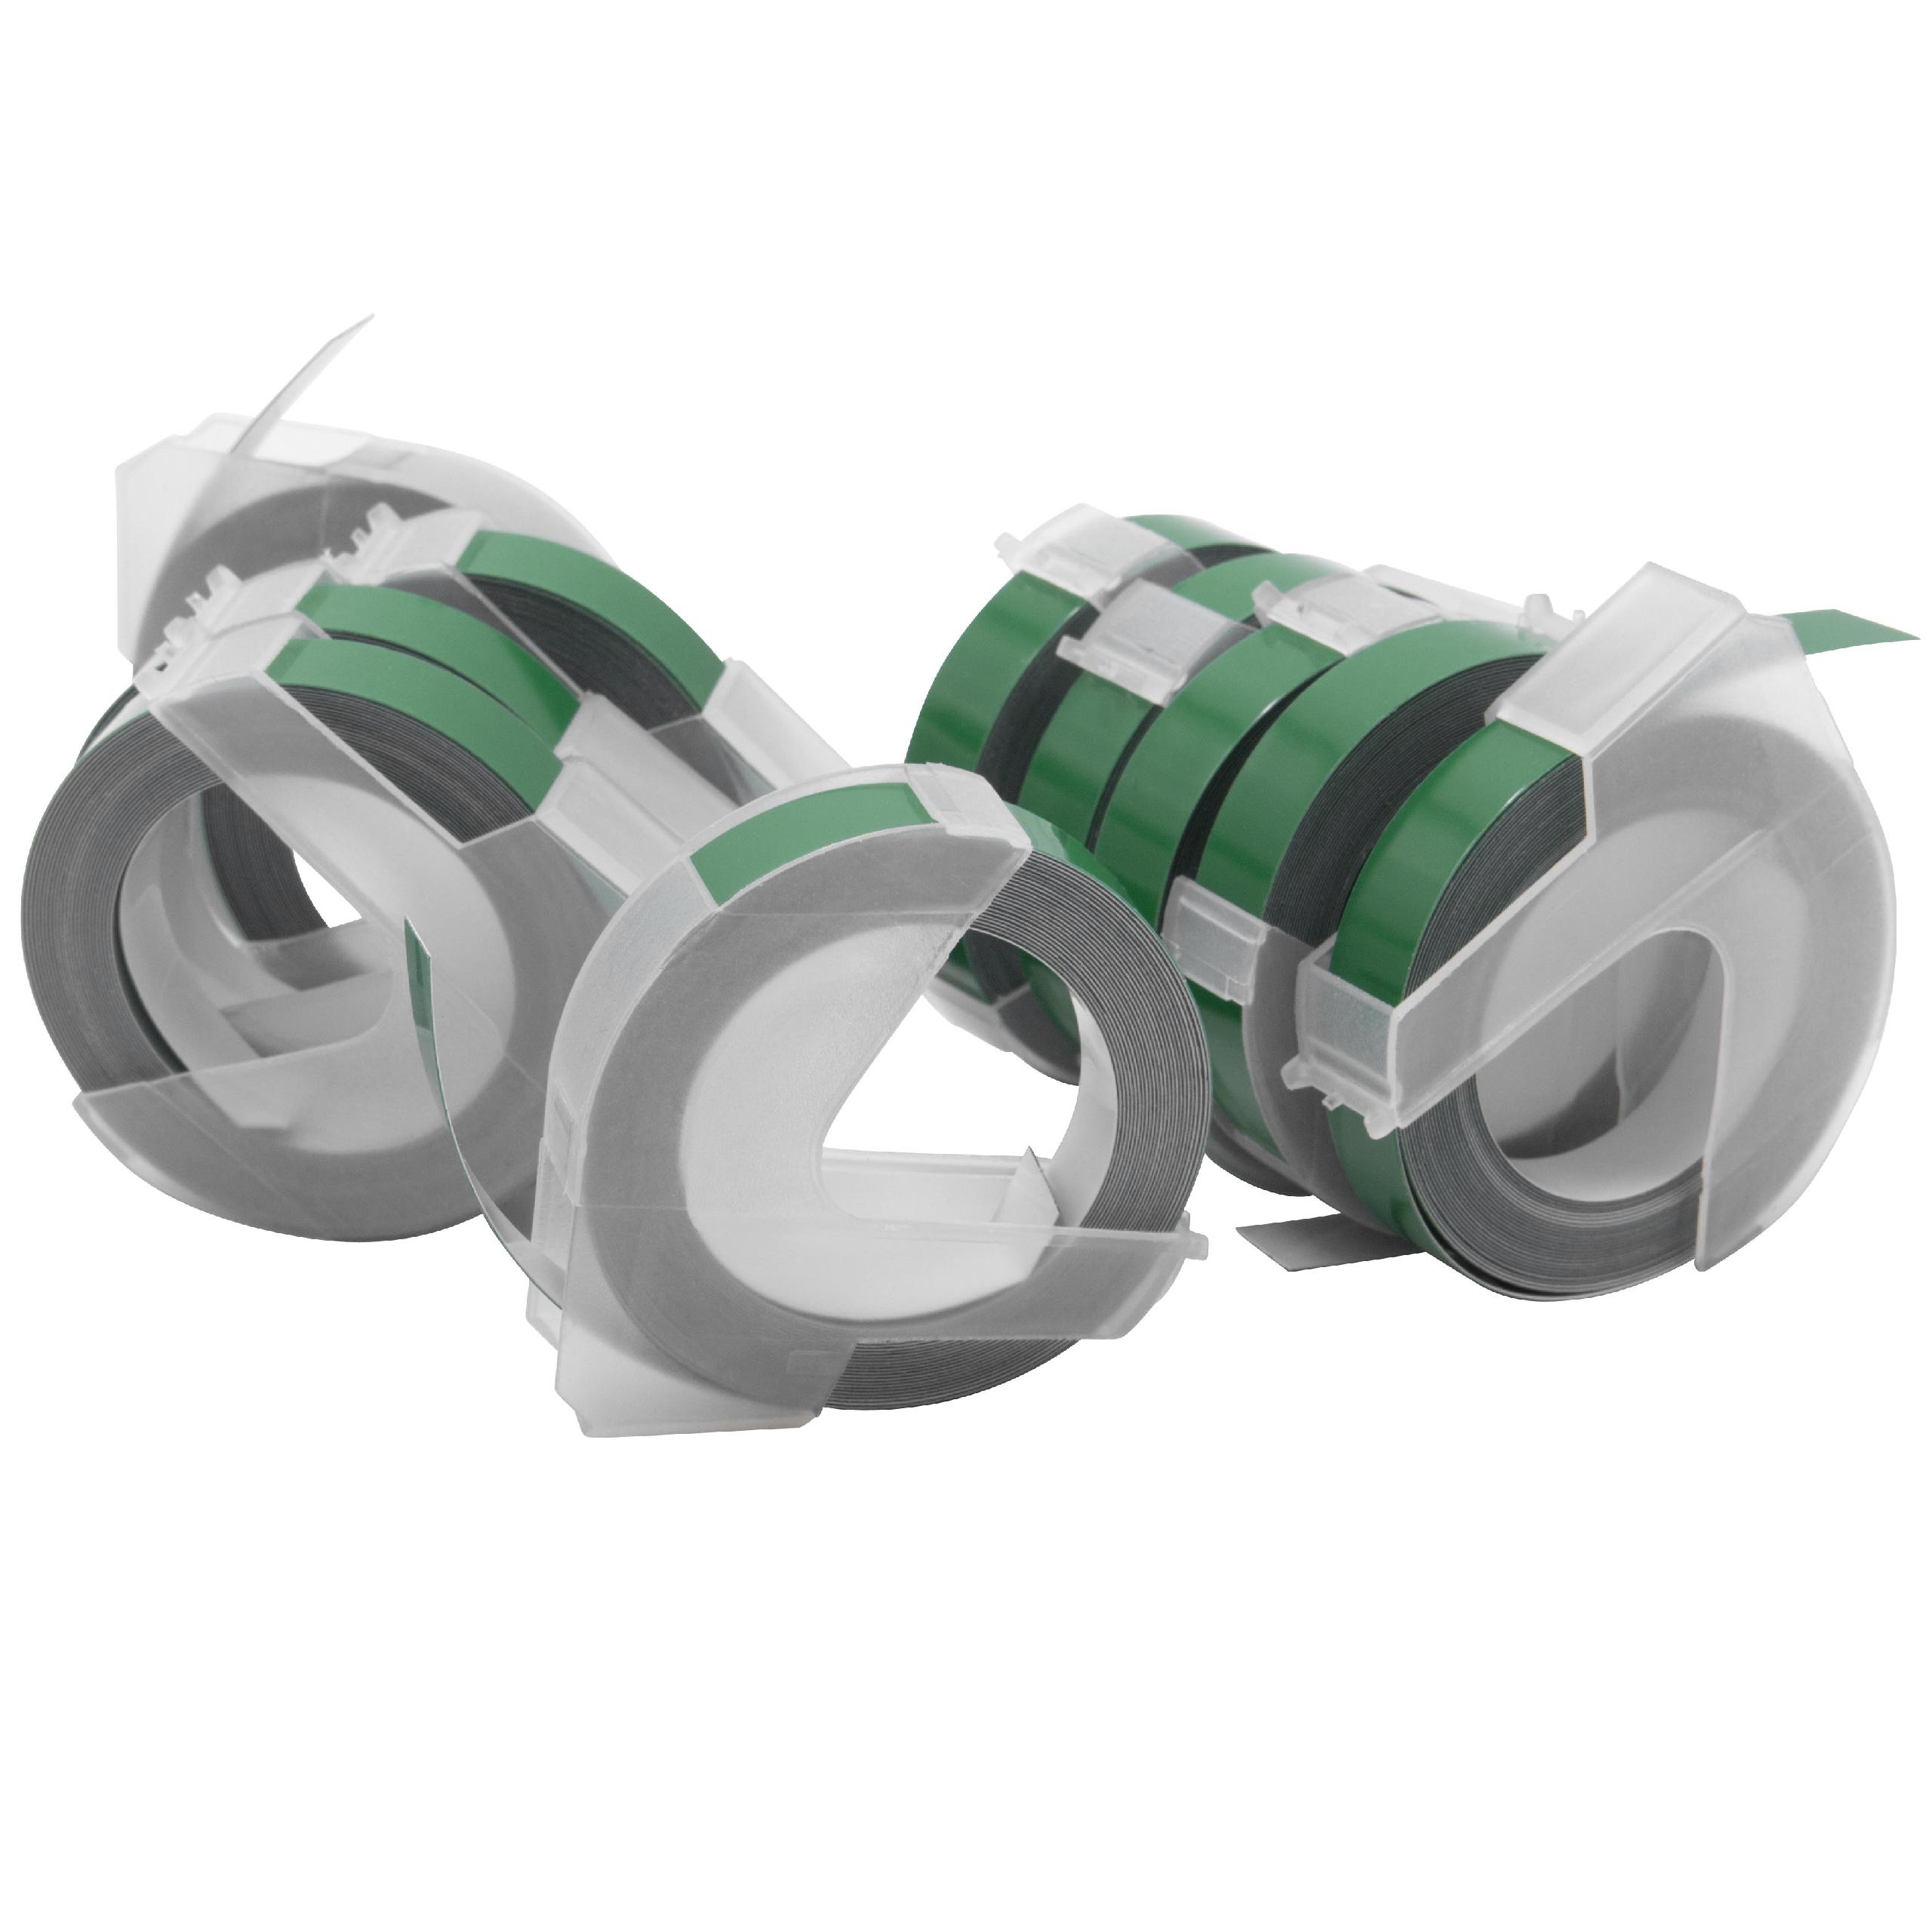 10x Casete cinta relieve 3D Casete cinta escritura reemplaza Dymo 520105, 0898160 Blanco su Verde